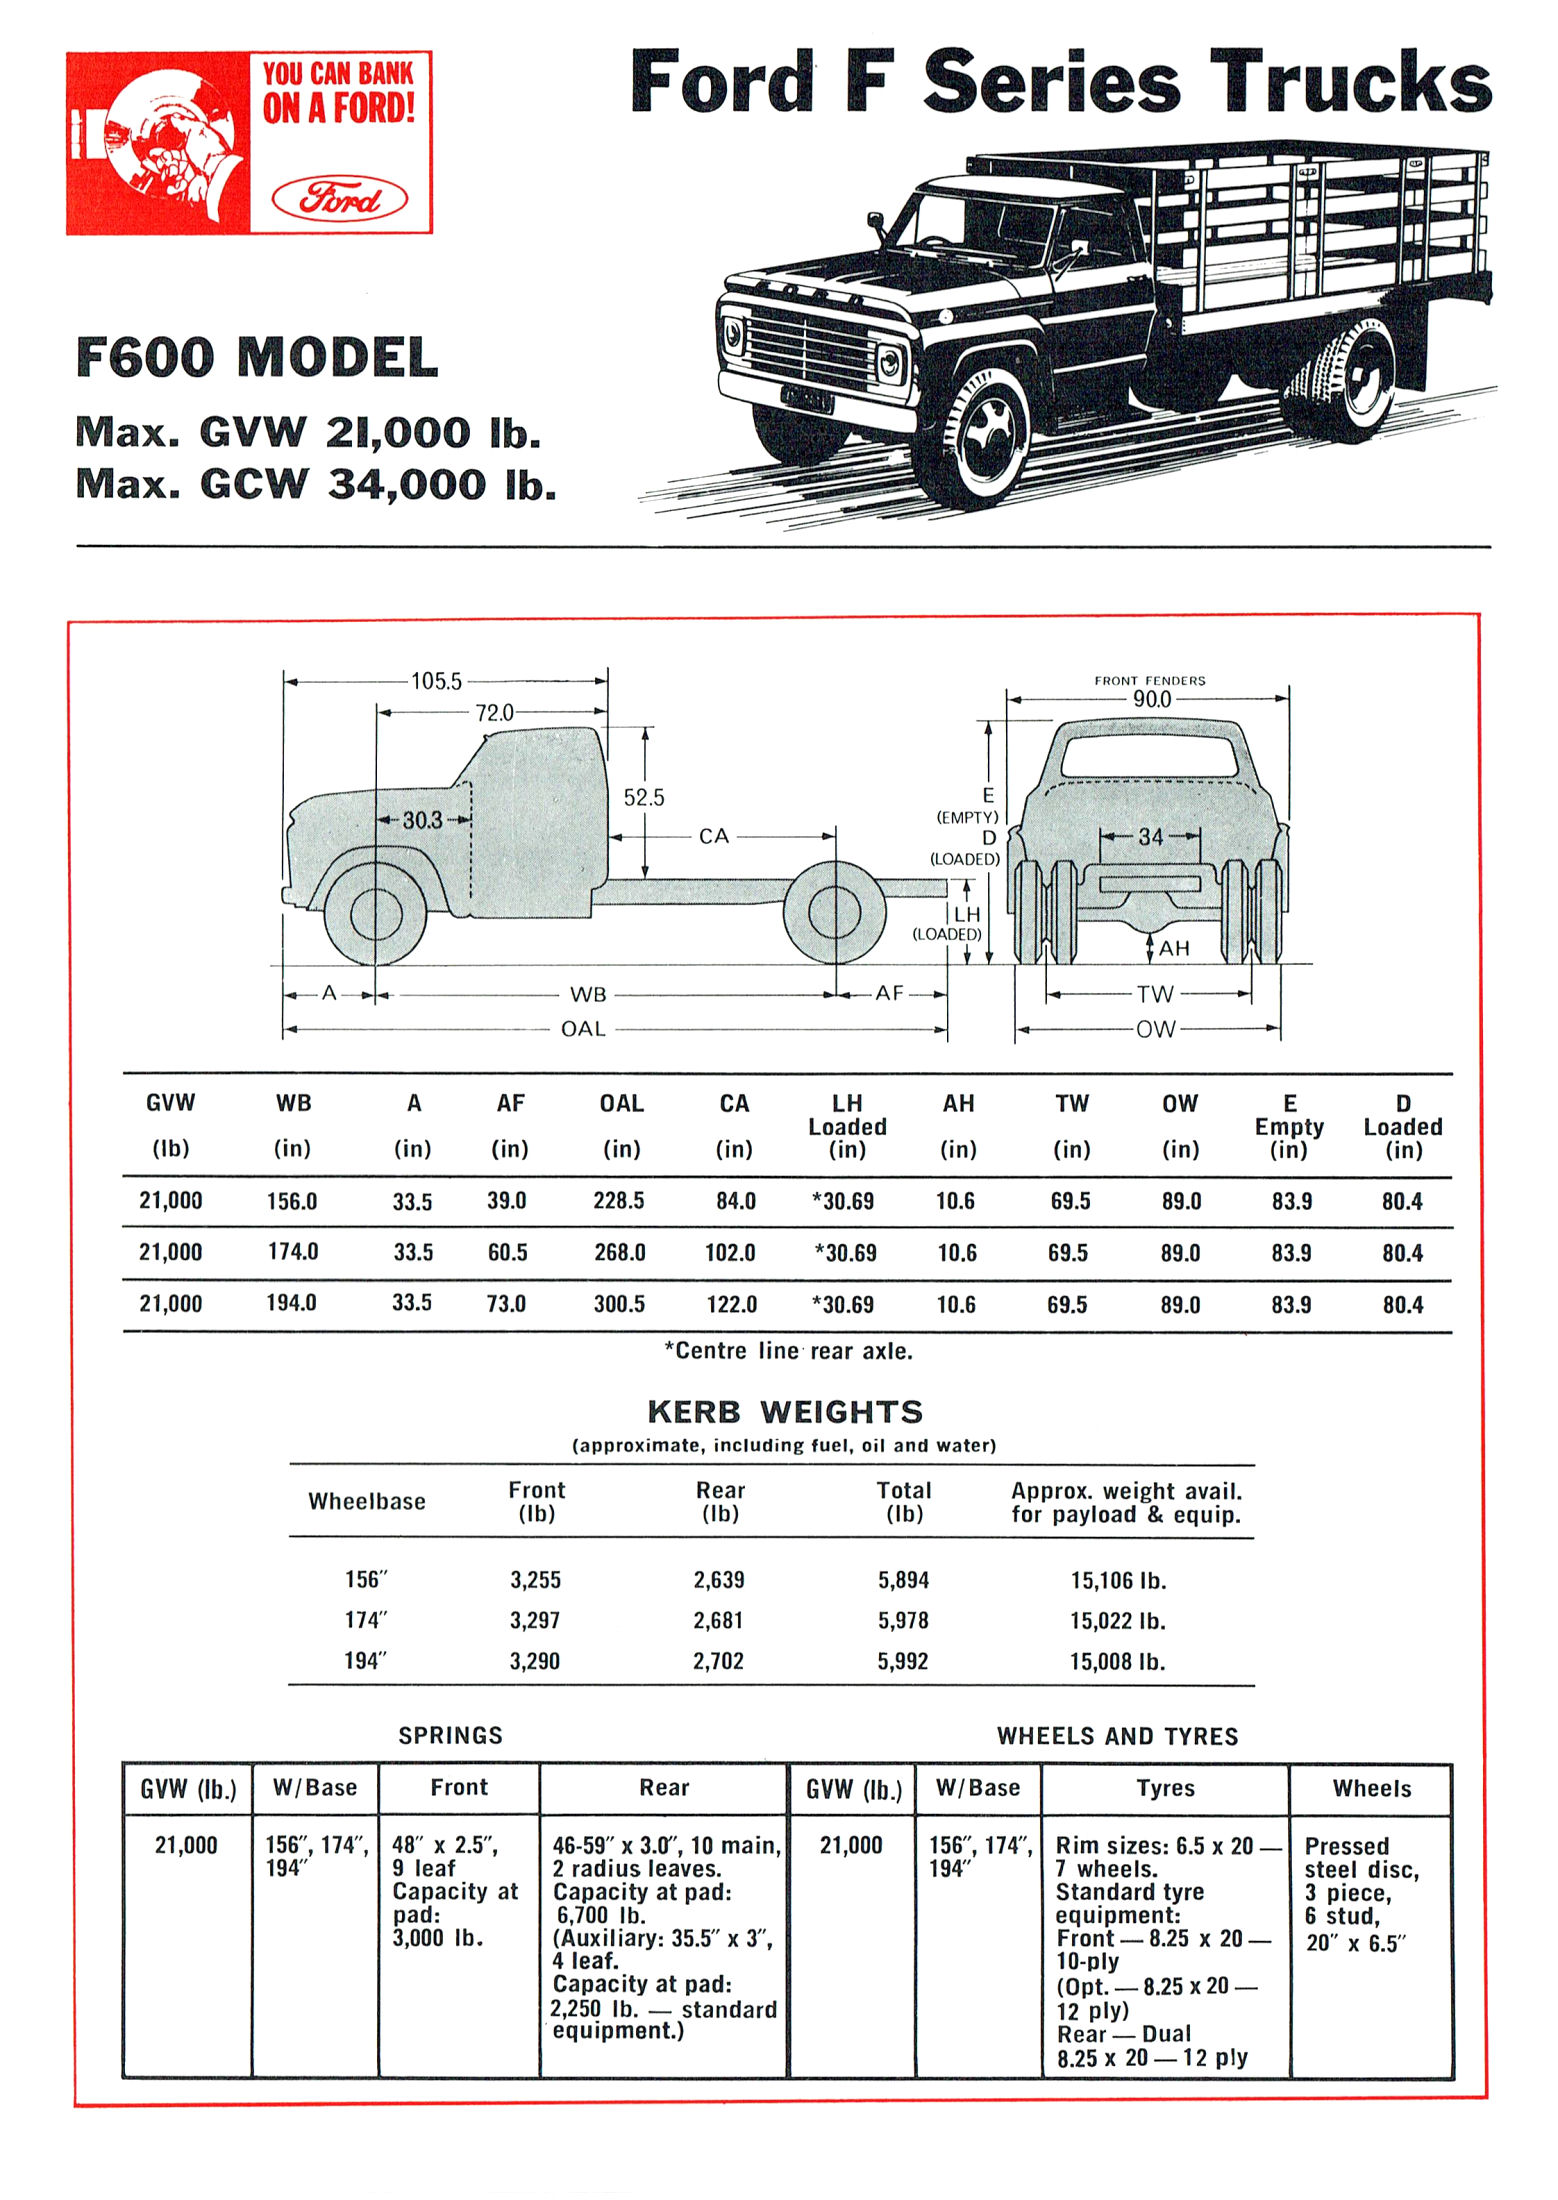 1968 Ford Trucks (Aus)-iF6a.jpg-2022-12-7 13.27.17